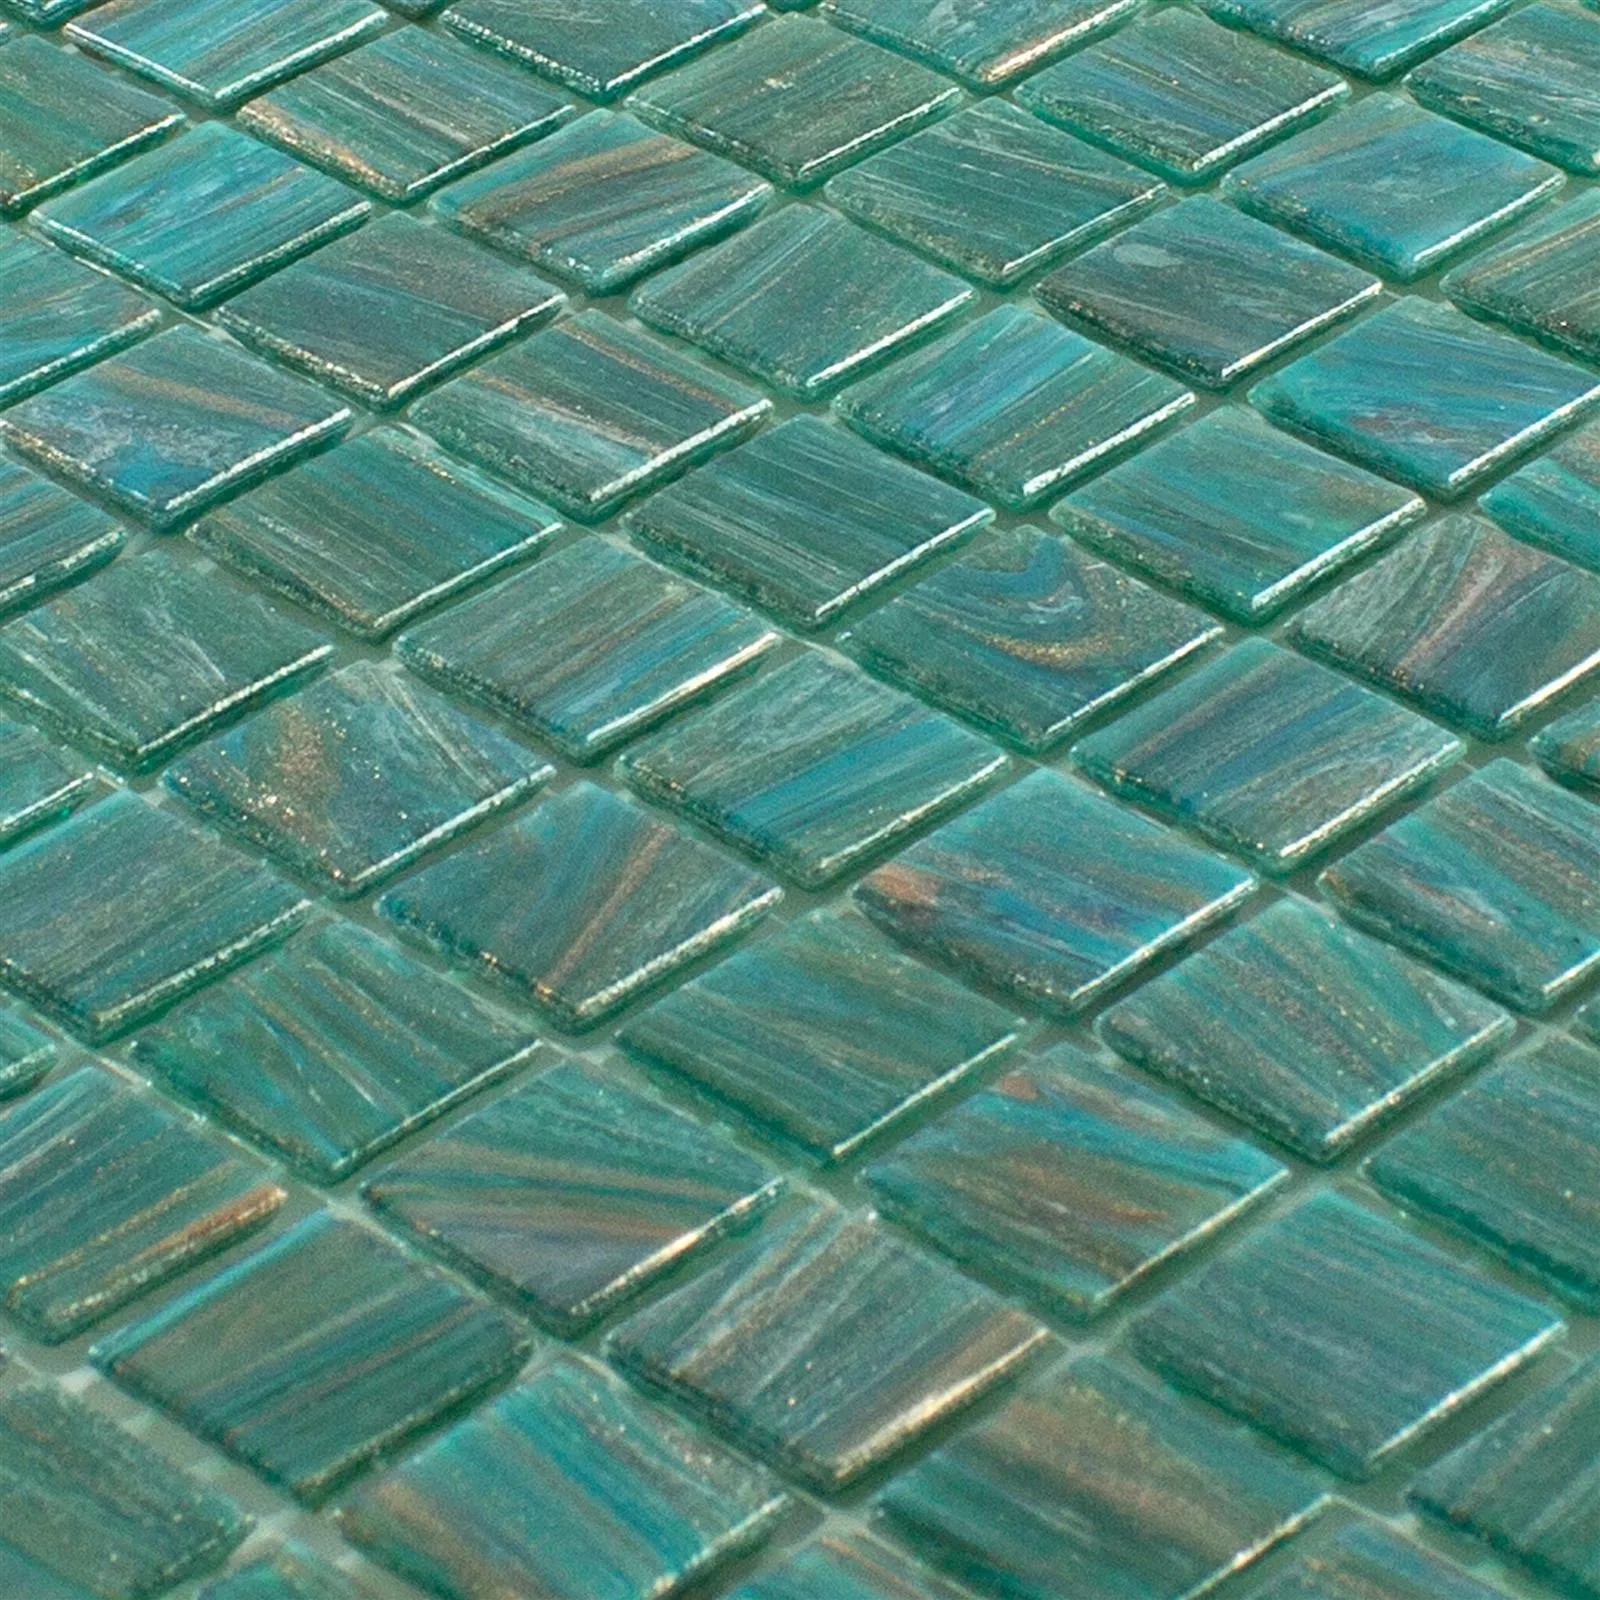 Muster von Glas Mosaikfliese Ogeday Goldeffekt Grün